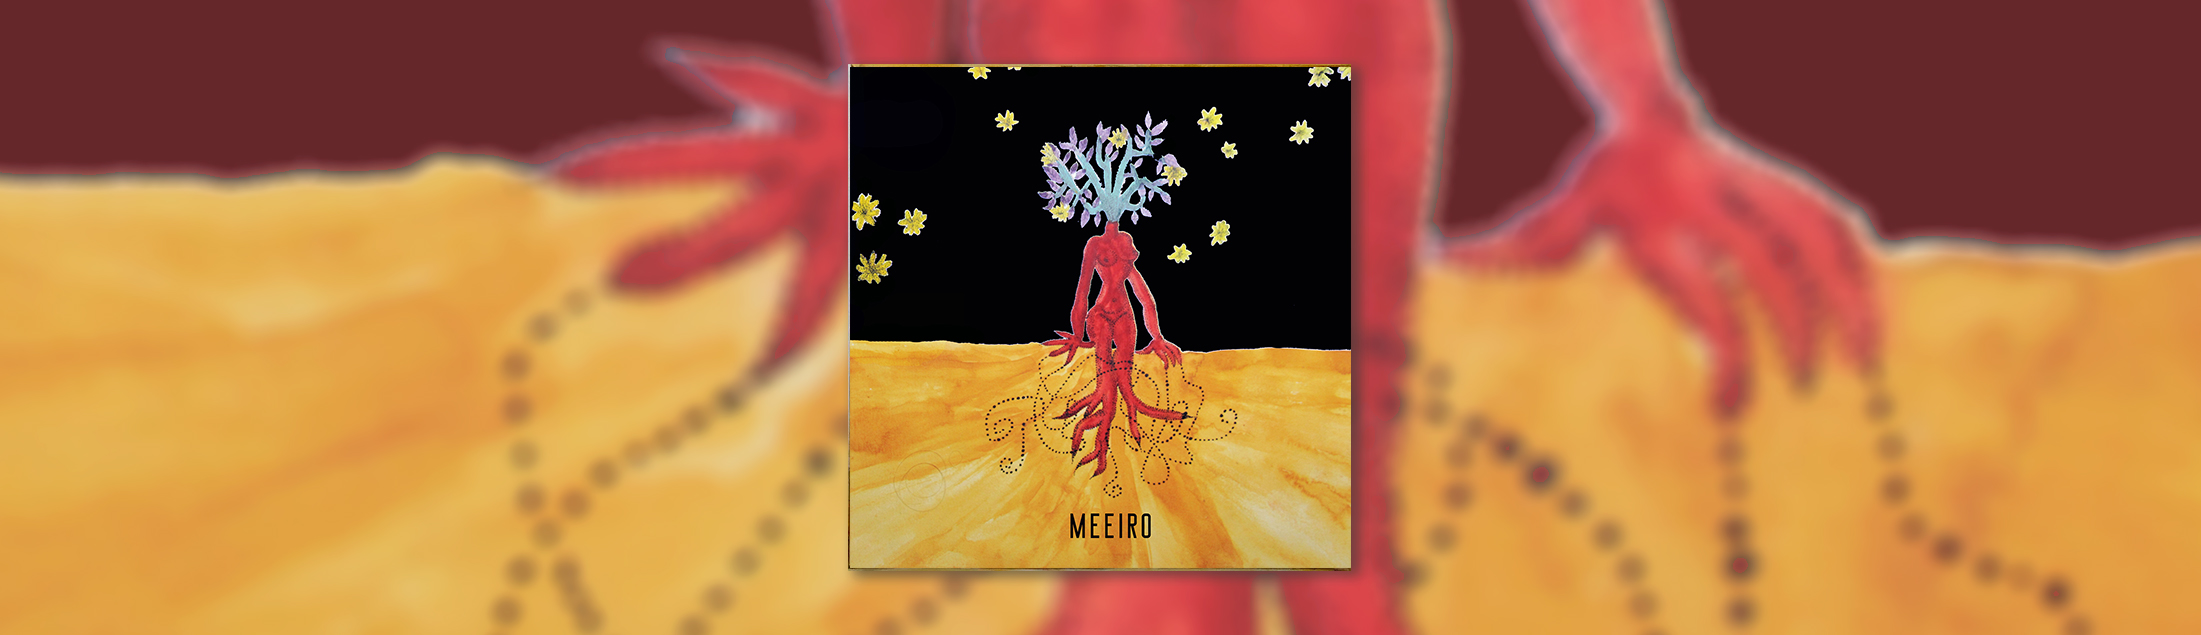 Julieta Brandão reúne singles no EP “Meeiro” e apresenta novas estéticas de compositores cariocas